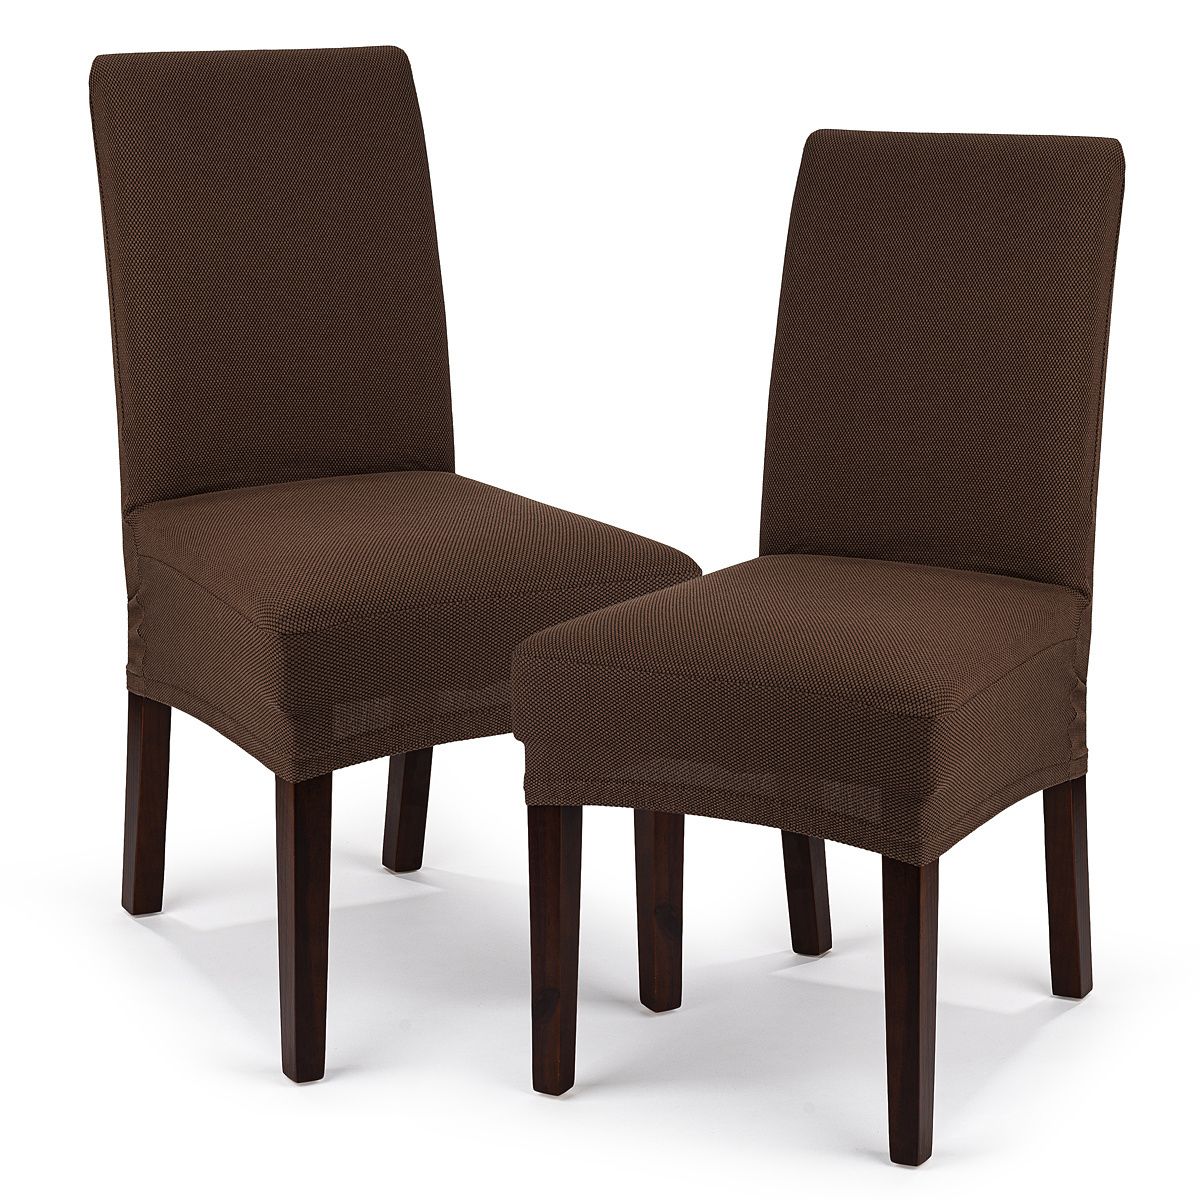 4Home Multielastický potah na židli Comfort hnědá, 40 - 50 cm, sada 2 ks - 4home.cz